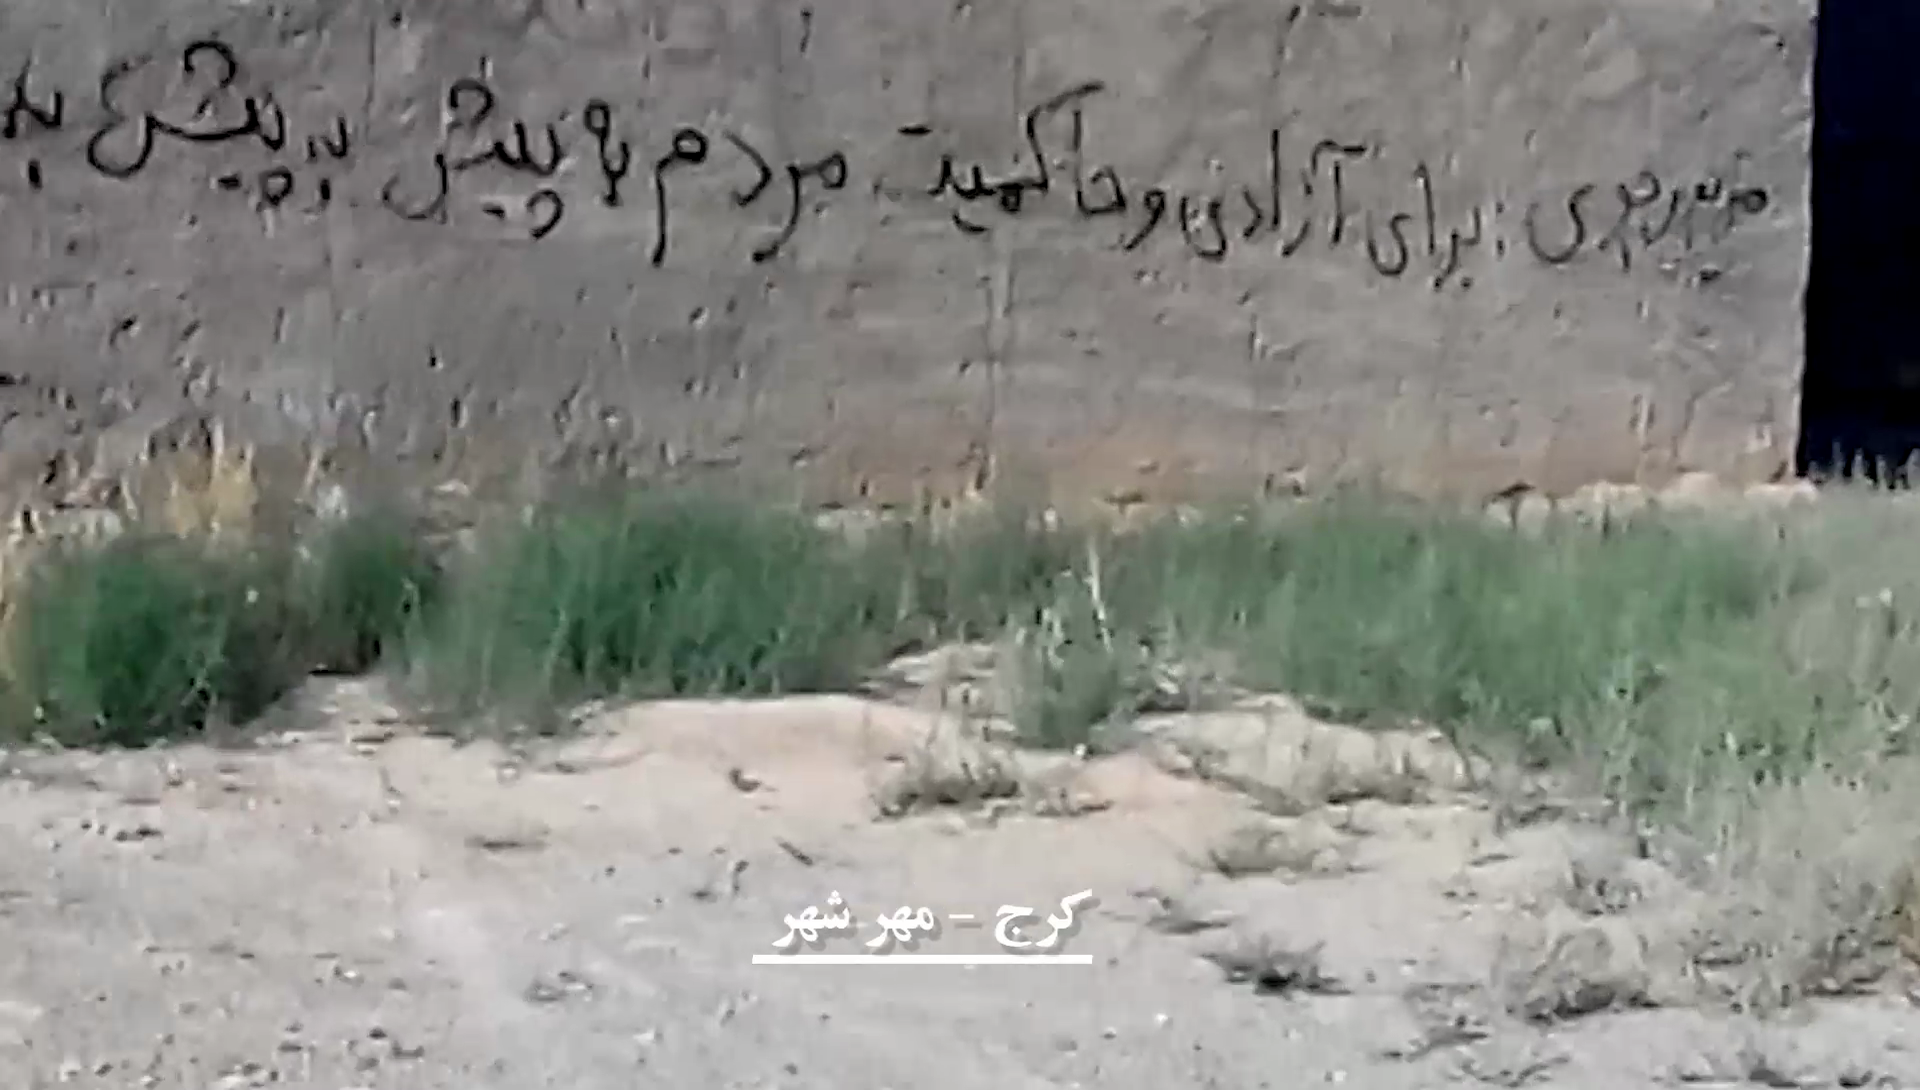 کرج - مهر شهر: دیوار نویسی با شعار برای آزادی و حاکمیت مردمی به پیش به پیش، کهکشان 96